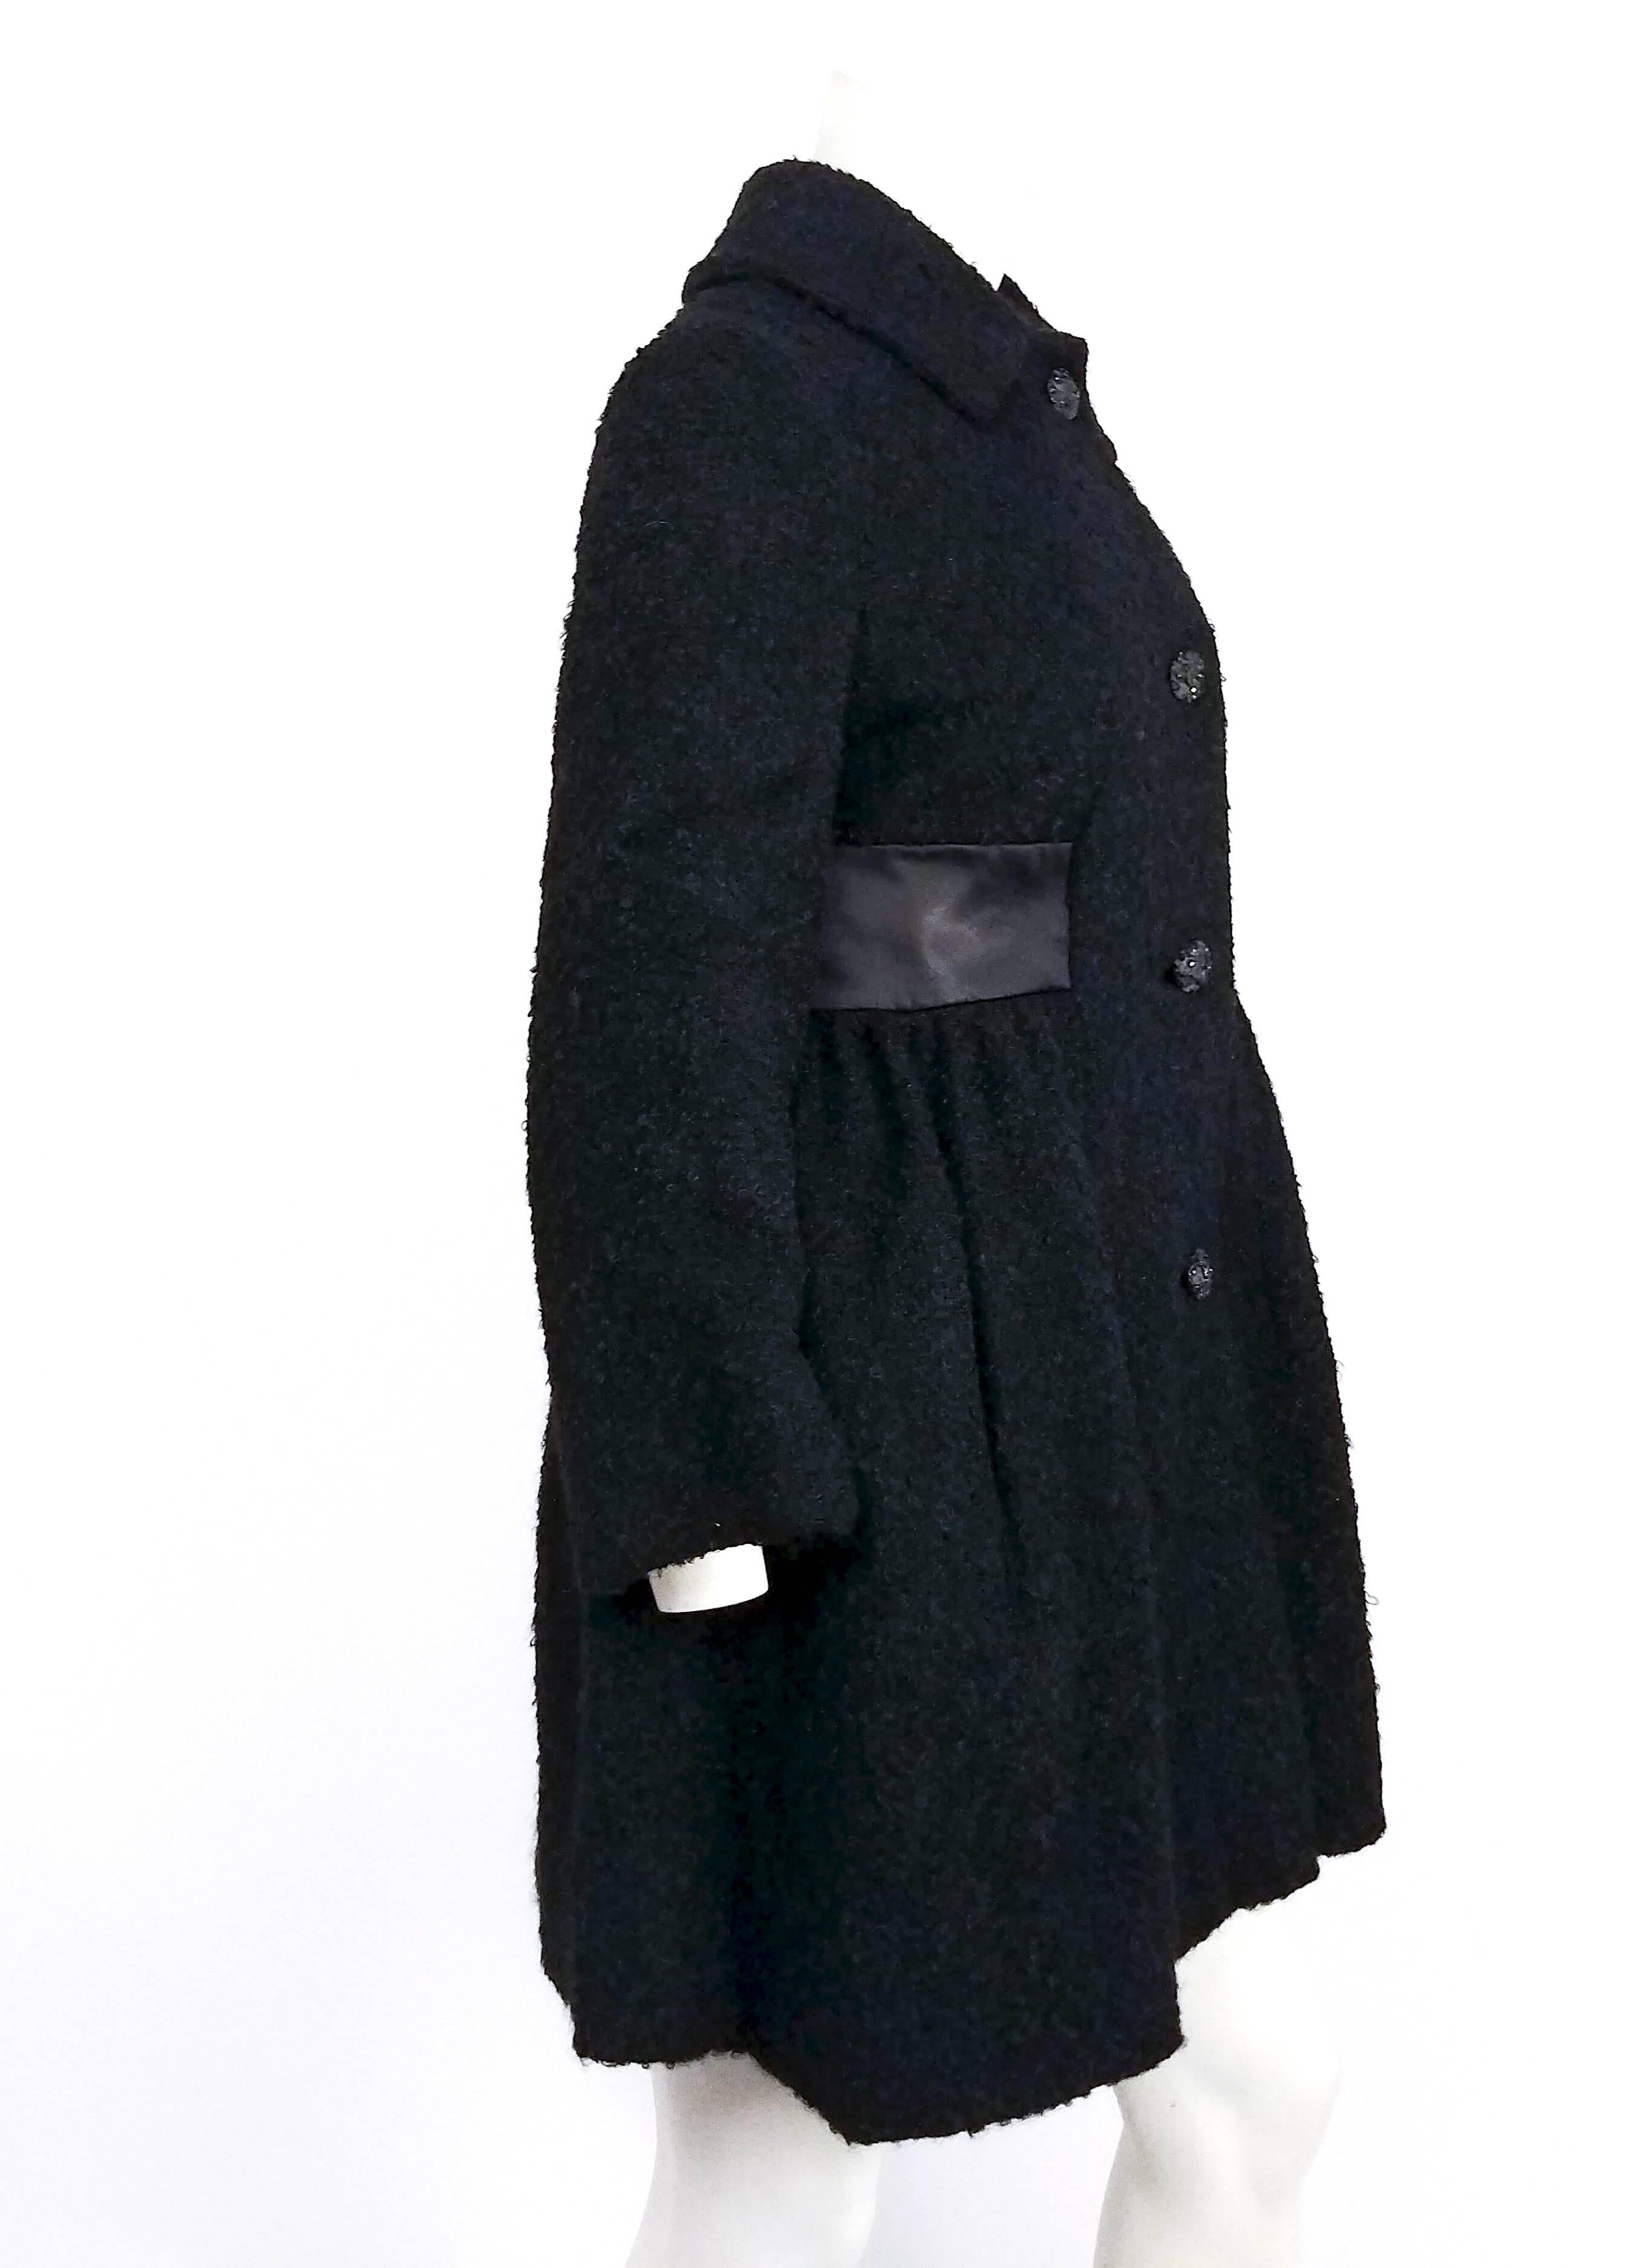 1960er Jahre Schwarzer Kurzmantel aus gekochter Wolle. Satin-Taillen-Detail, geraffter Rock des Mantels in A-Linien-Silhouette. Dekorative schwarze Knöpfe. 